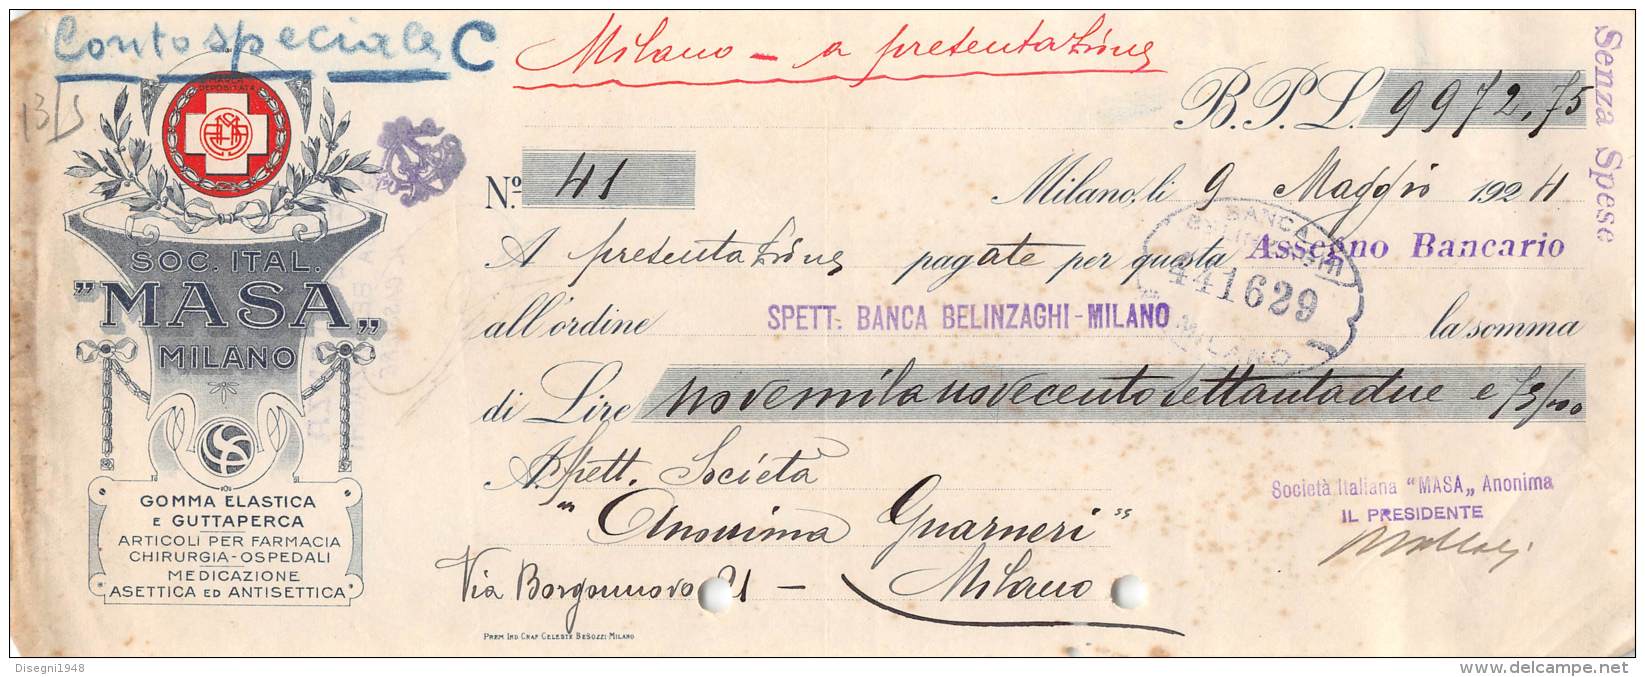 06250  "SOCIETA' ITALIANA MASA - MILANO - ASSEGNO BANCARIO - 1924" ORIGINALE - Chèques & Chèques De Voyage